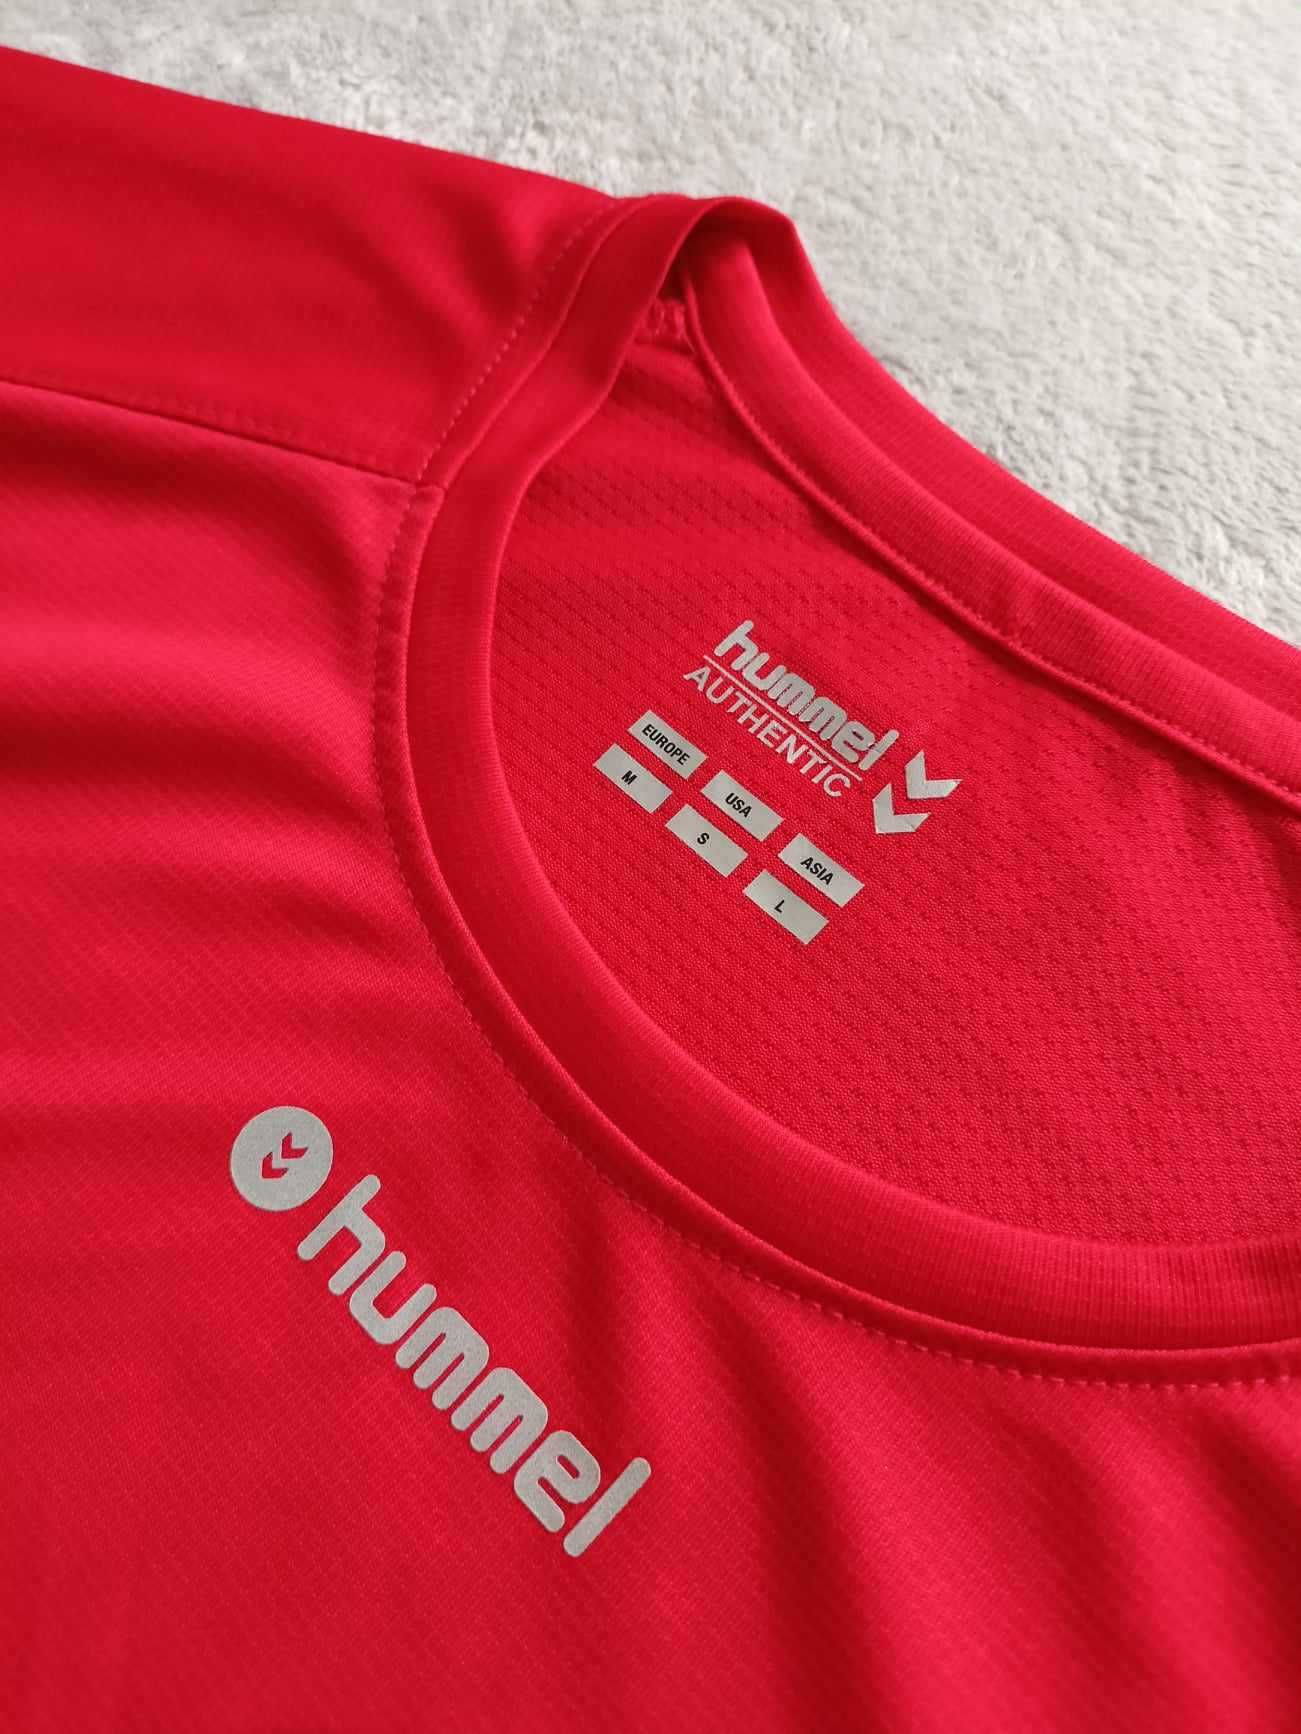 Męski t-shirt/koszulka treningowa Hummel rozmiar M (na oko bardziej S)